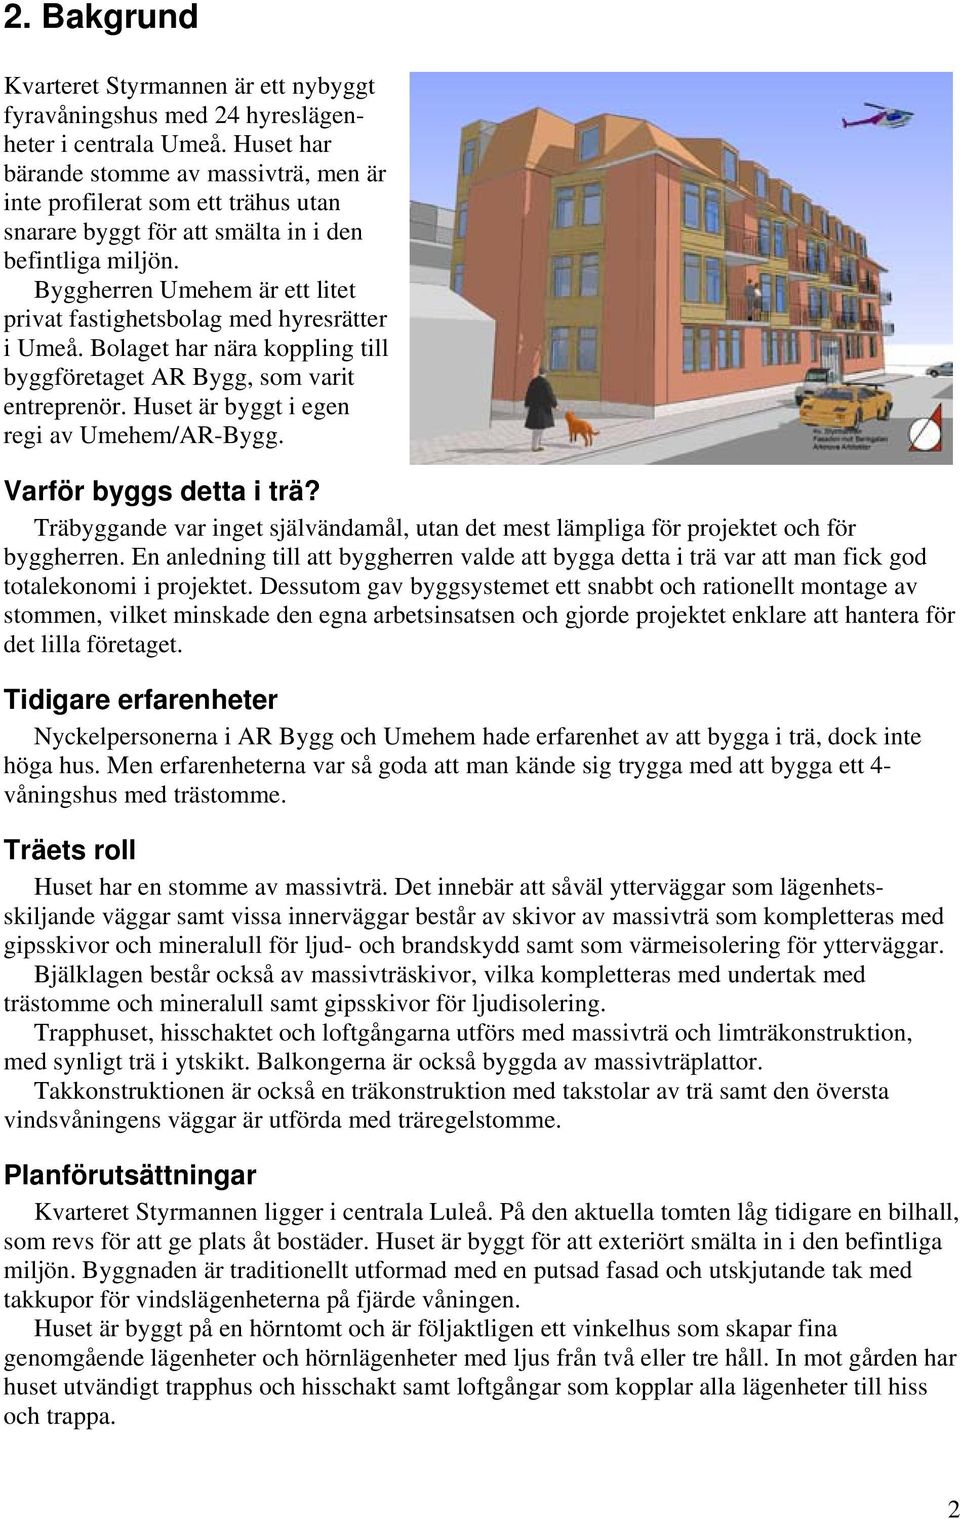 Byggherren Umehem är ett litet privat fastighetsbolag med hyresrätter i Umeå. Bolaget har nära koppling till byggföretaget AR Bygg, som varit entreprenör. Huset är byggt i egen regi av Umehem/AR-Bygg.